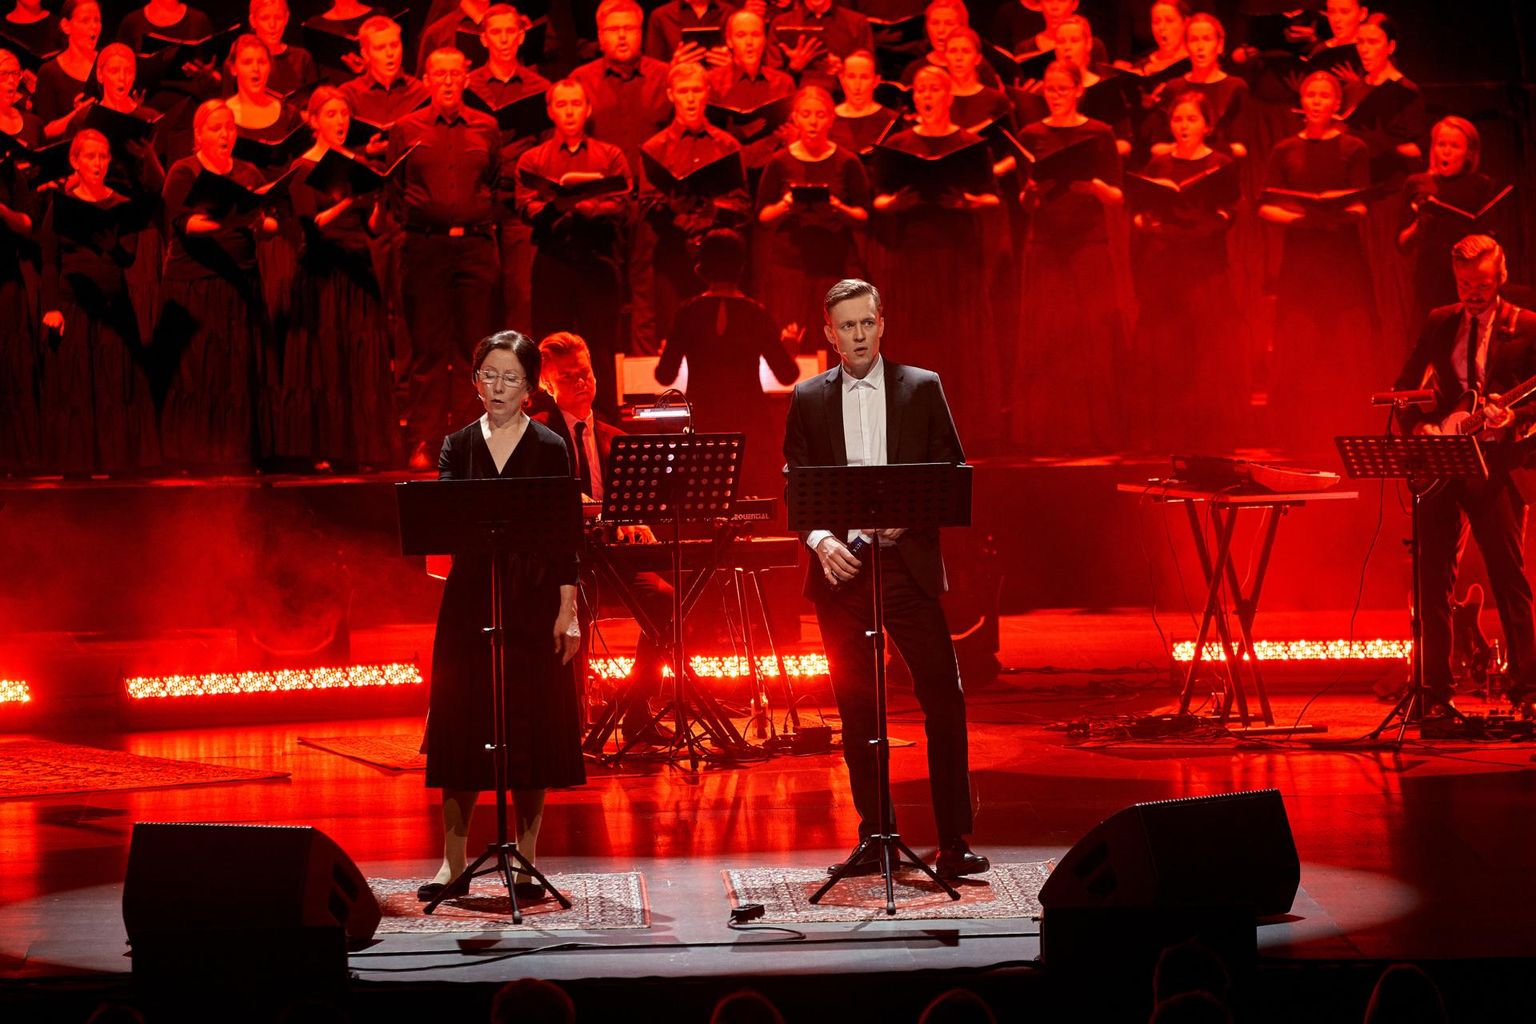 Hetk üks kord etendunud traagilisest gospelist «Anonüümne igatsus», mis pakkus vaatajatele põimiku Delfi kommentaaridest, mille valis välja Eero Epner ja kandsid ette Anu Lamp ja Sergo Vares. Erki Pärnoja ja Marti Tärni loodud muusika kandsid ette segakoor Vox Populi (dirigent Janne Fridolin) ja Erki Pärnoja bänd. 